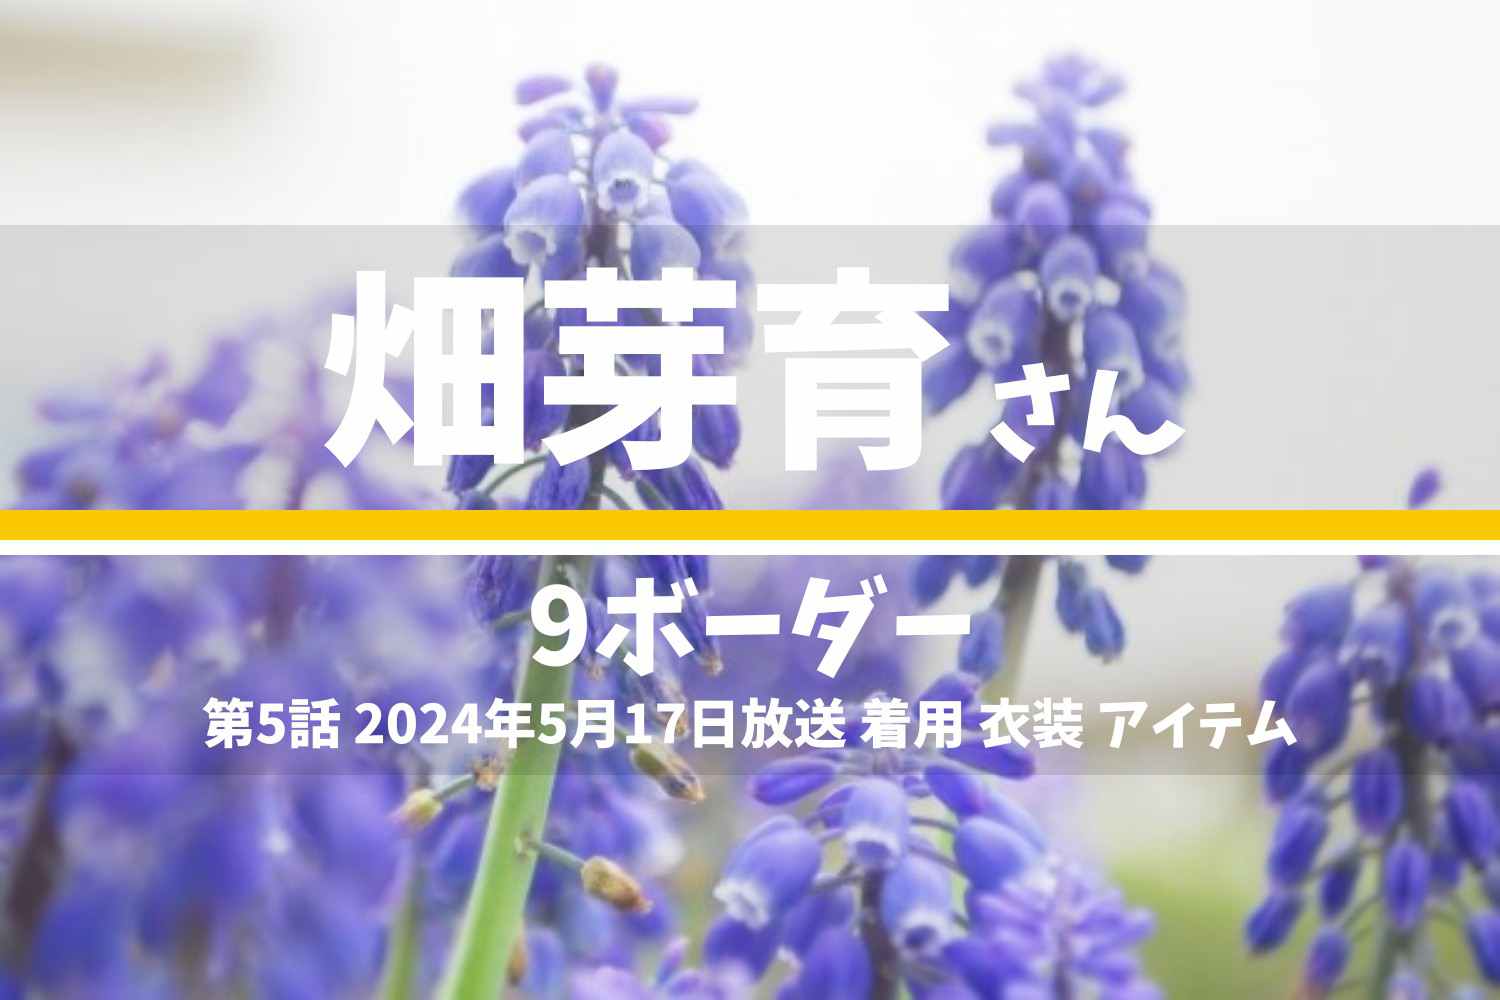 9ボーダー 畑芽育さん テレビドラマ 衣装 2024年5月17日放送